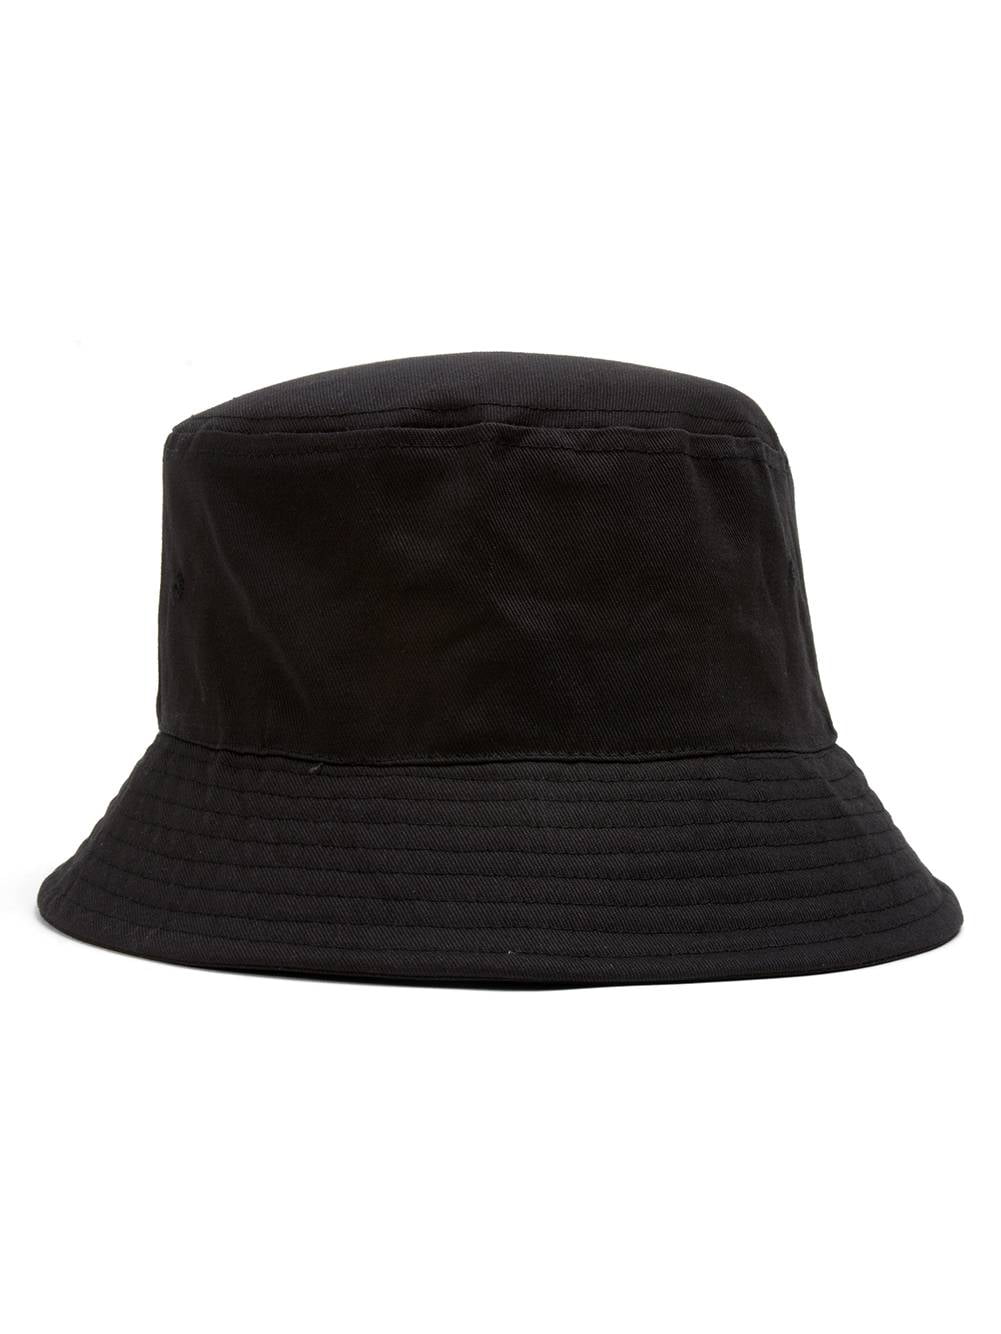 Topheadwear Topheadwear Blank Cotton Bucket Hat Walmart Com